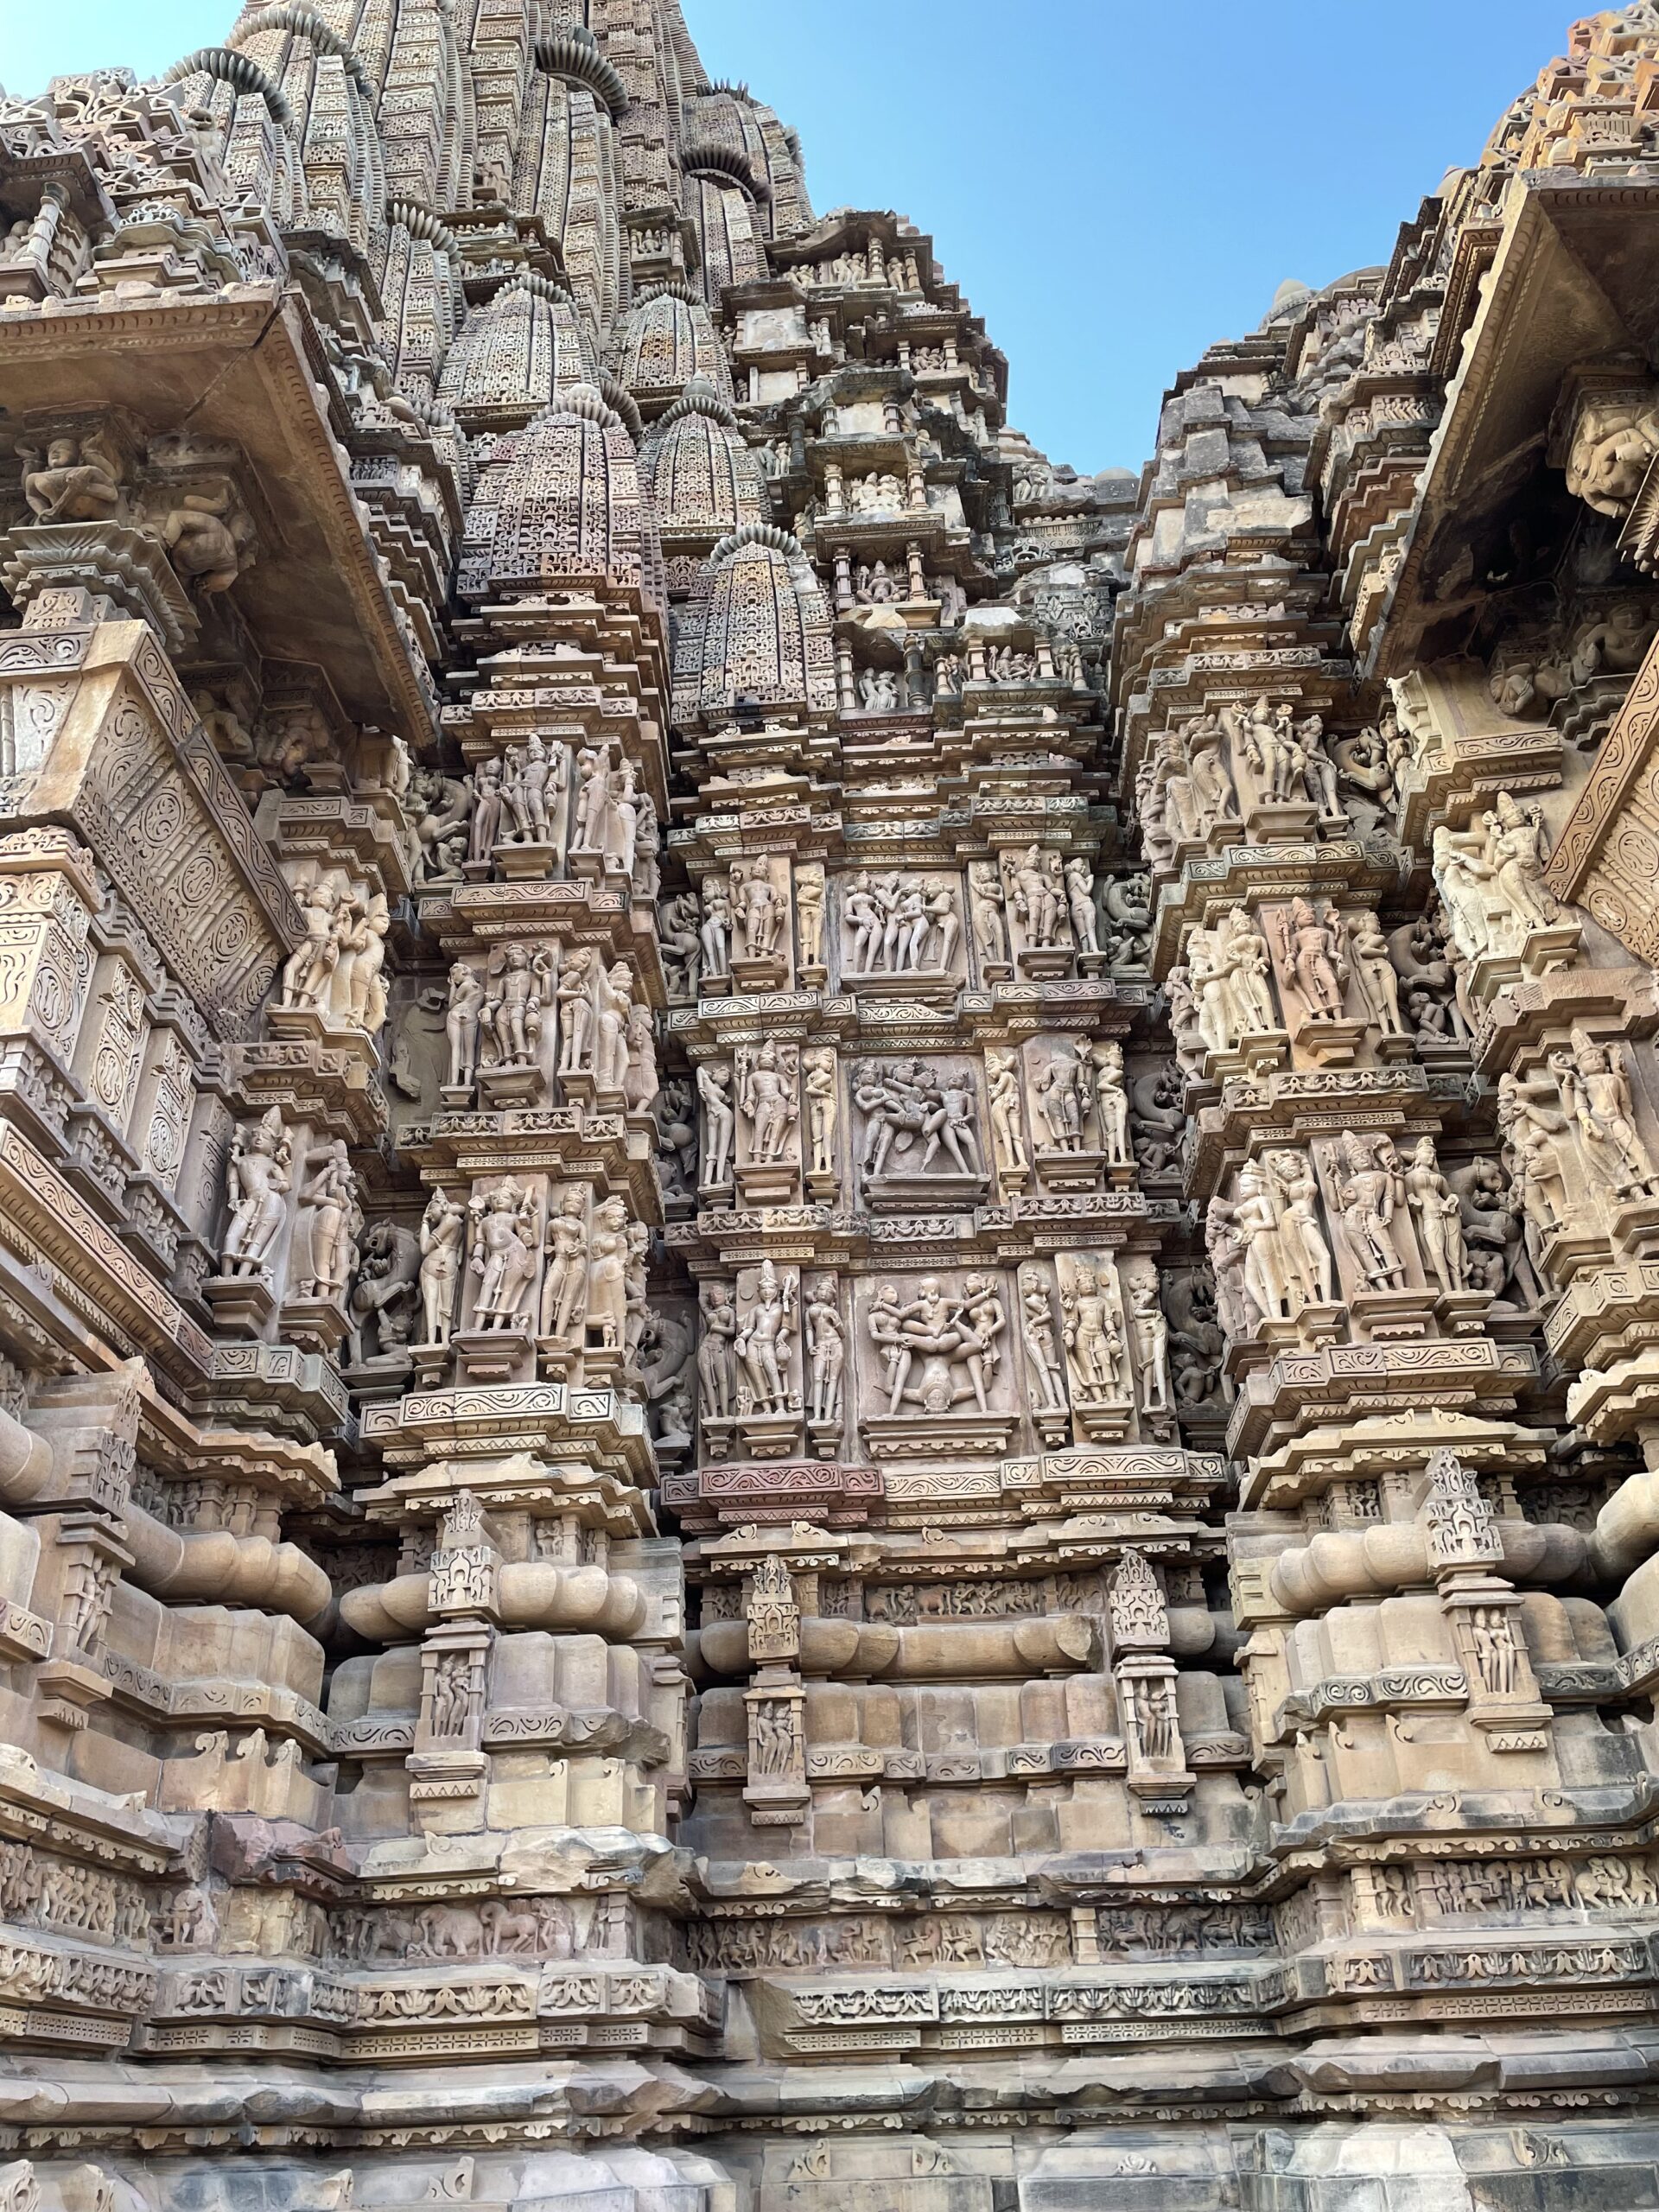 Sculpted facade of a temple in Khajuraho.